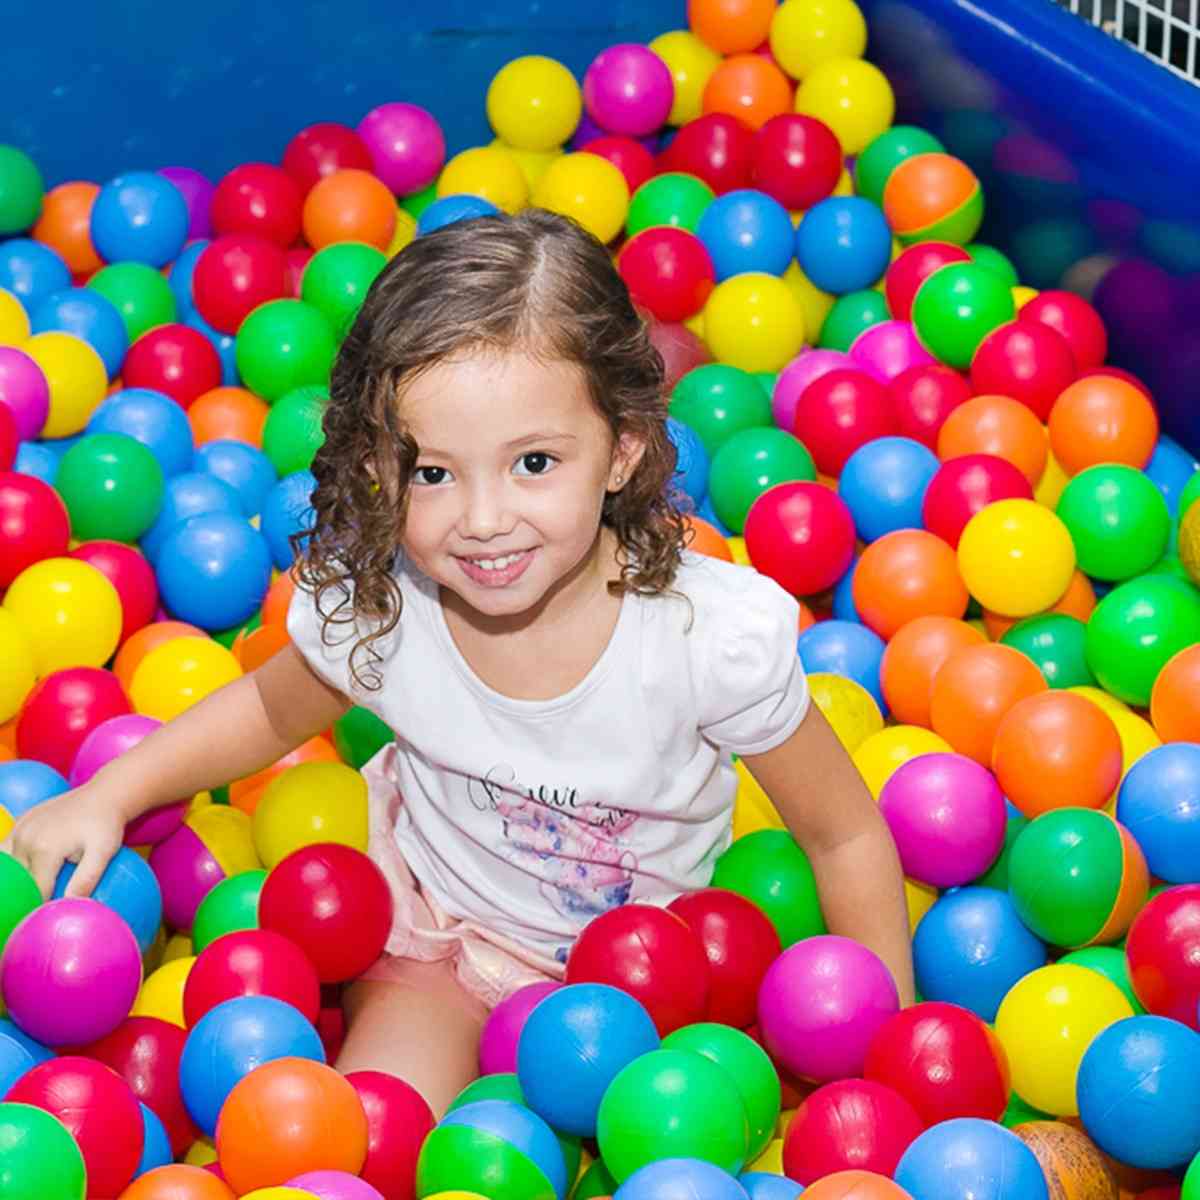 100 бр. 4 см цветове бебешки пластмасови топки - воден басейн океанска вълна топка, деца плуване яма с баскетбол обръч игра къща на открито палатки играчка (4 см)